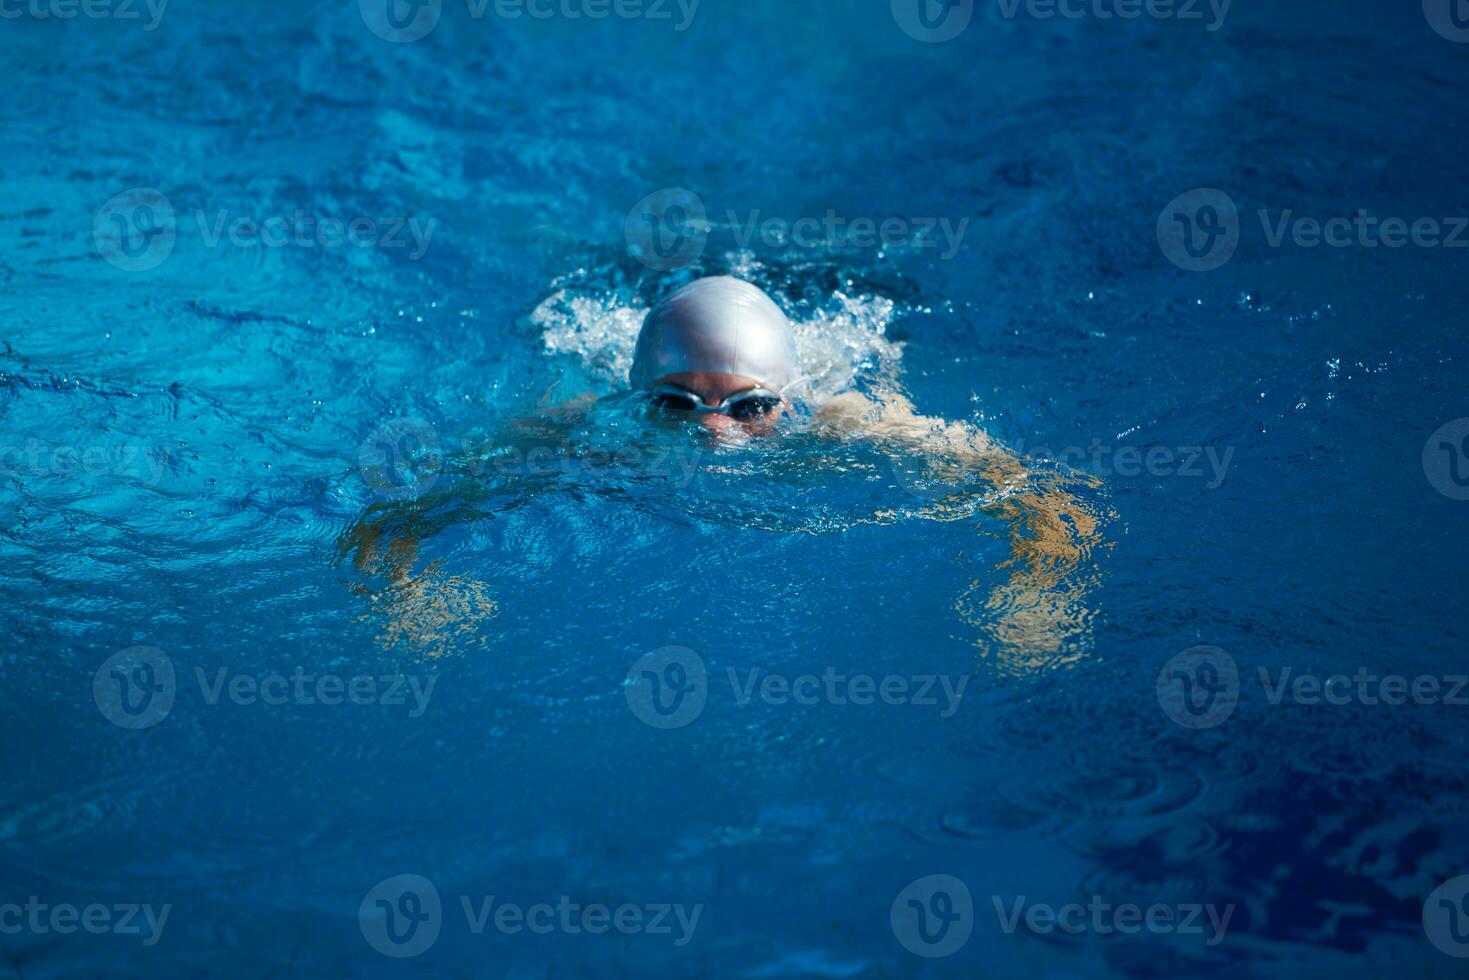 exercice de nageur sur le caca de piscine intérieure photo